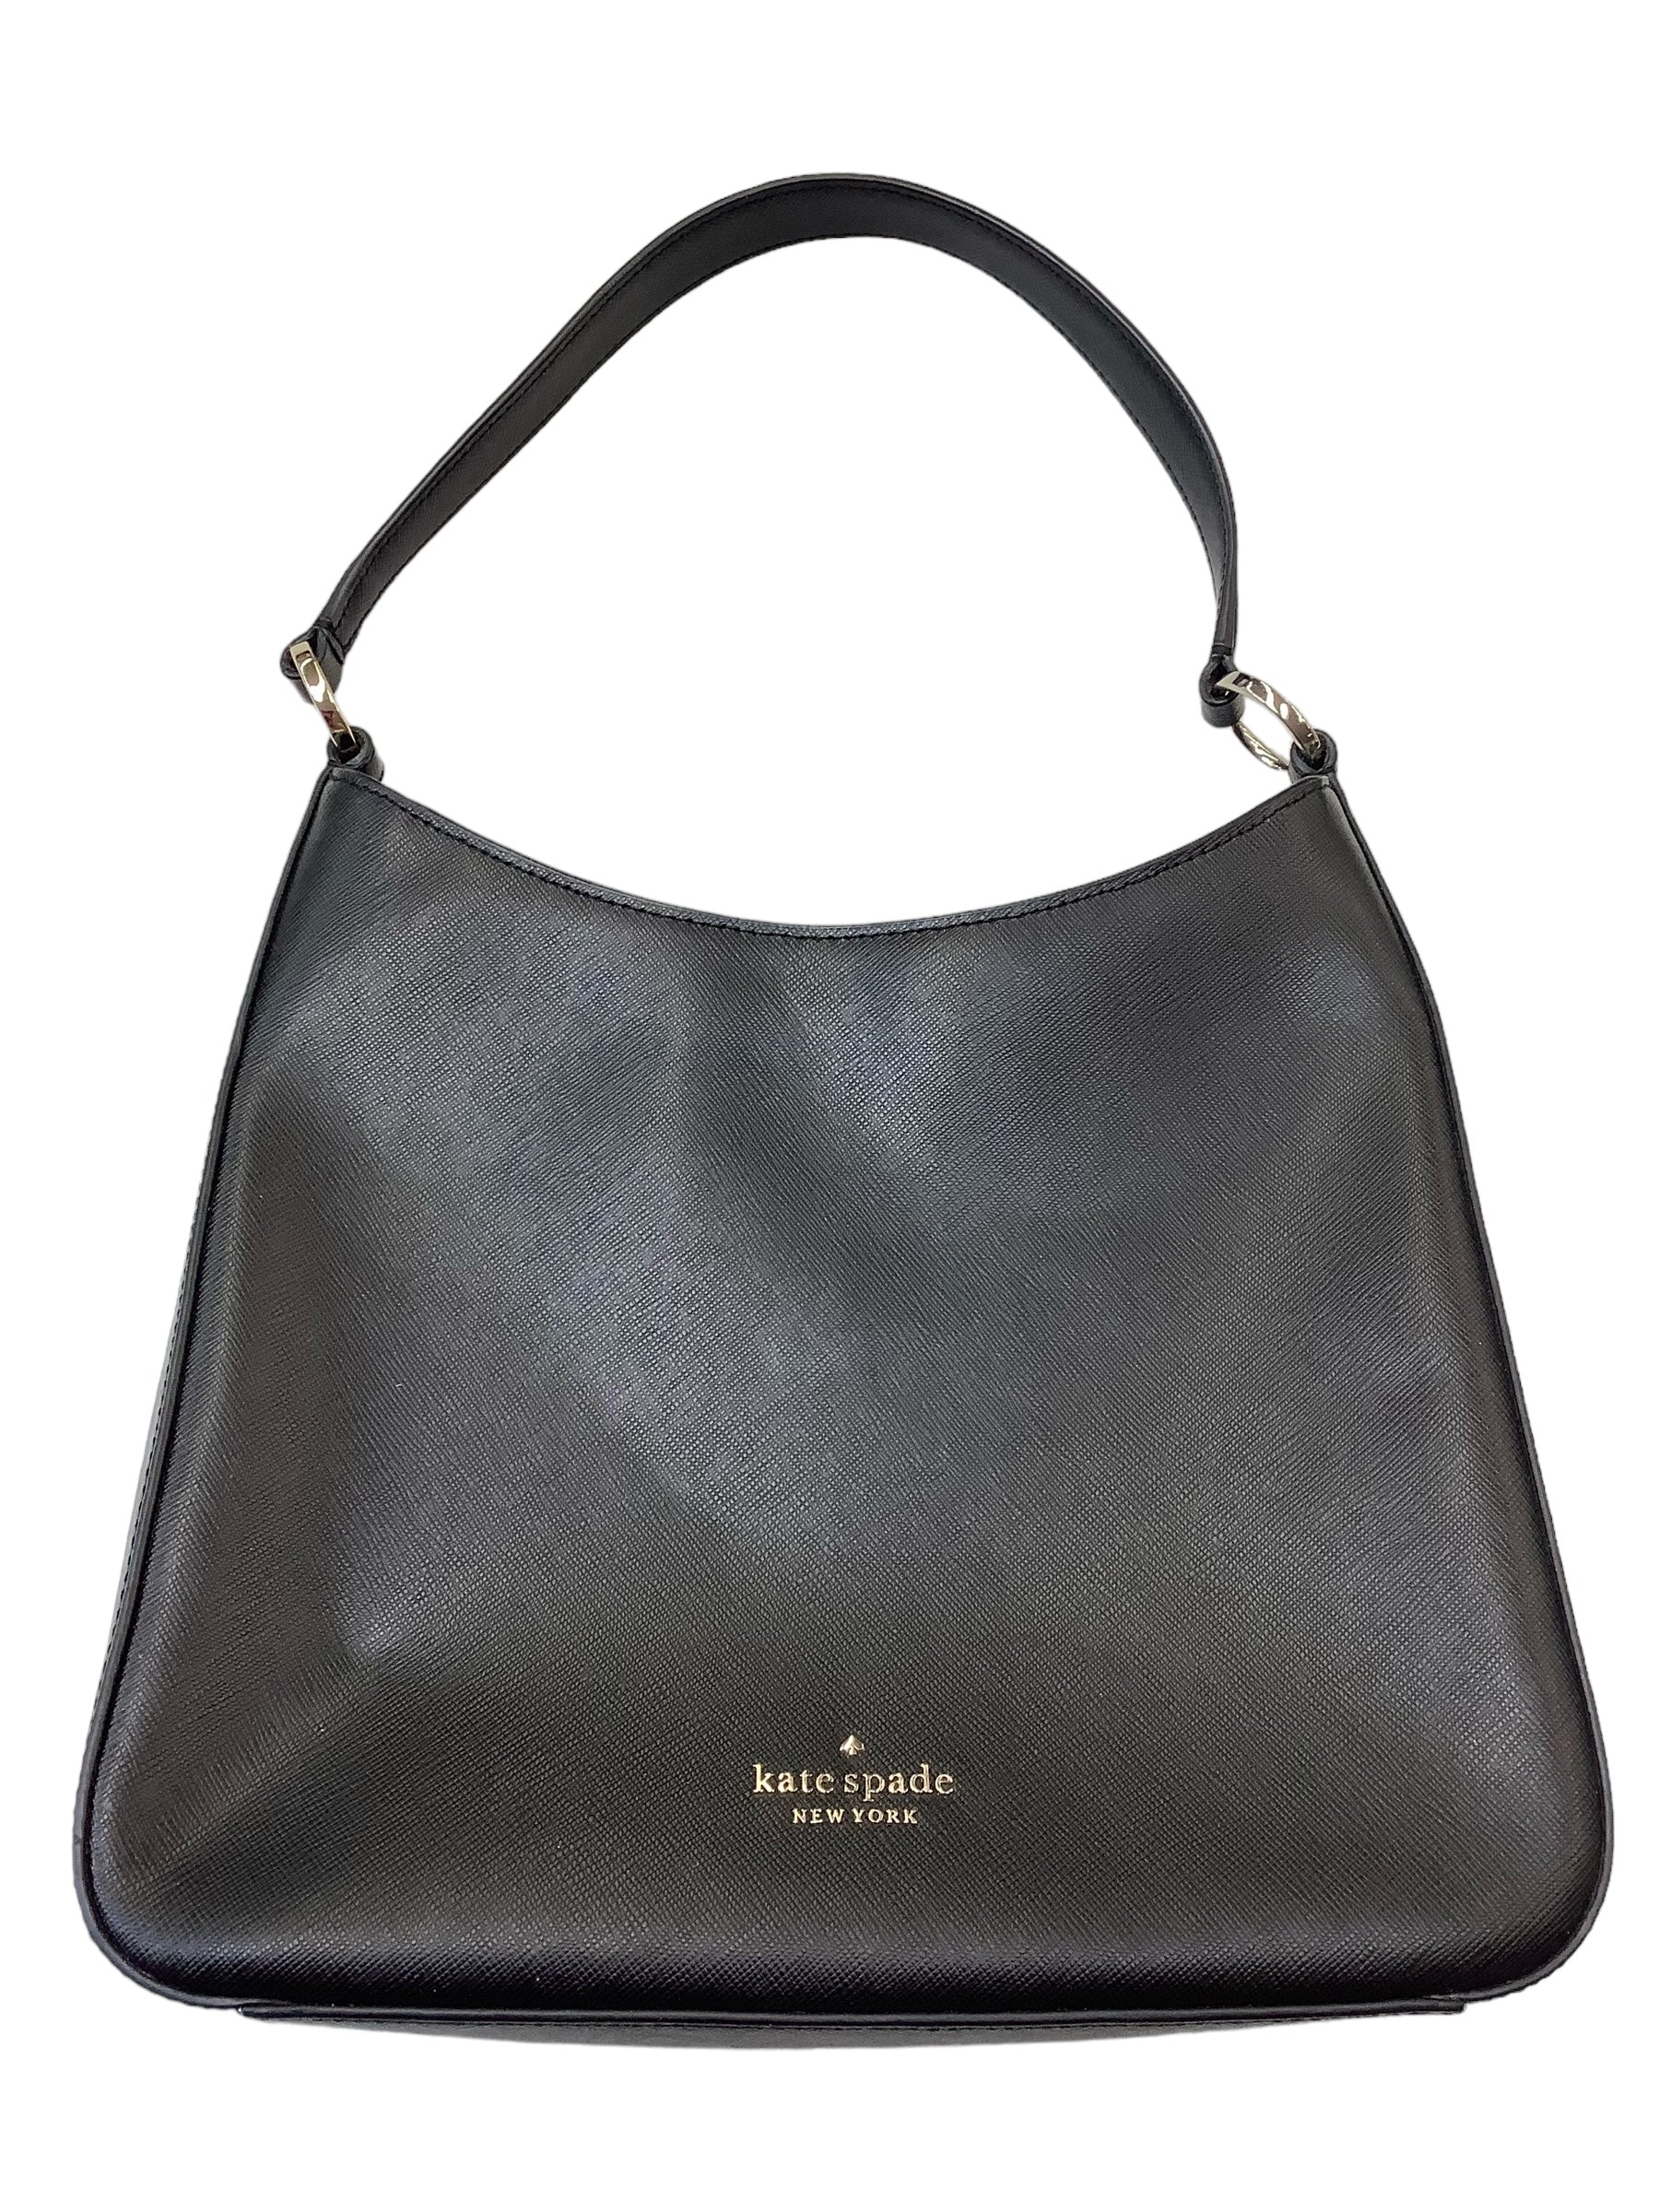 Jeep Genuine Leather Ladies Handbags - Tana Elegant